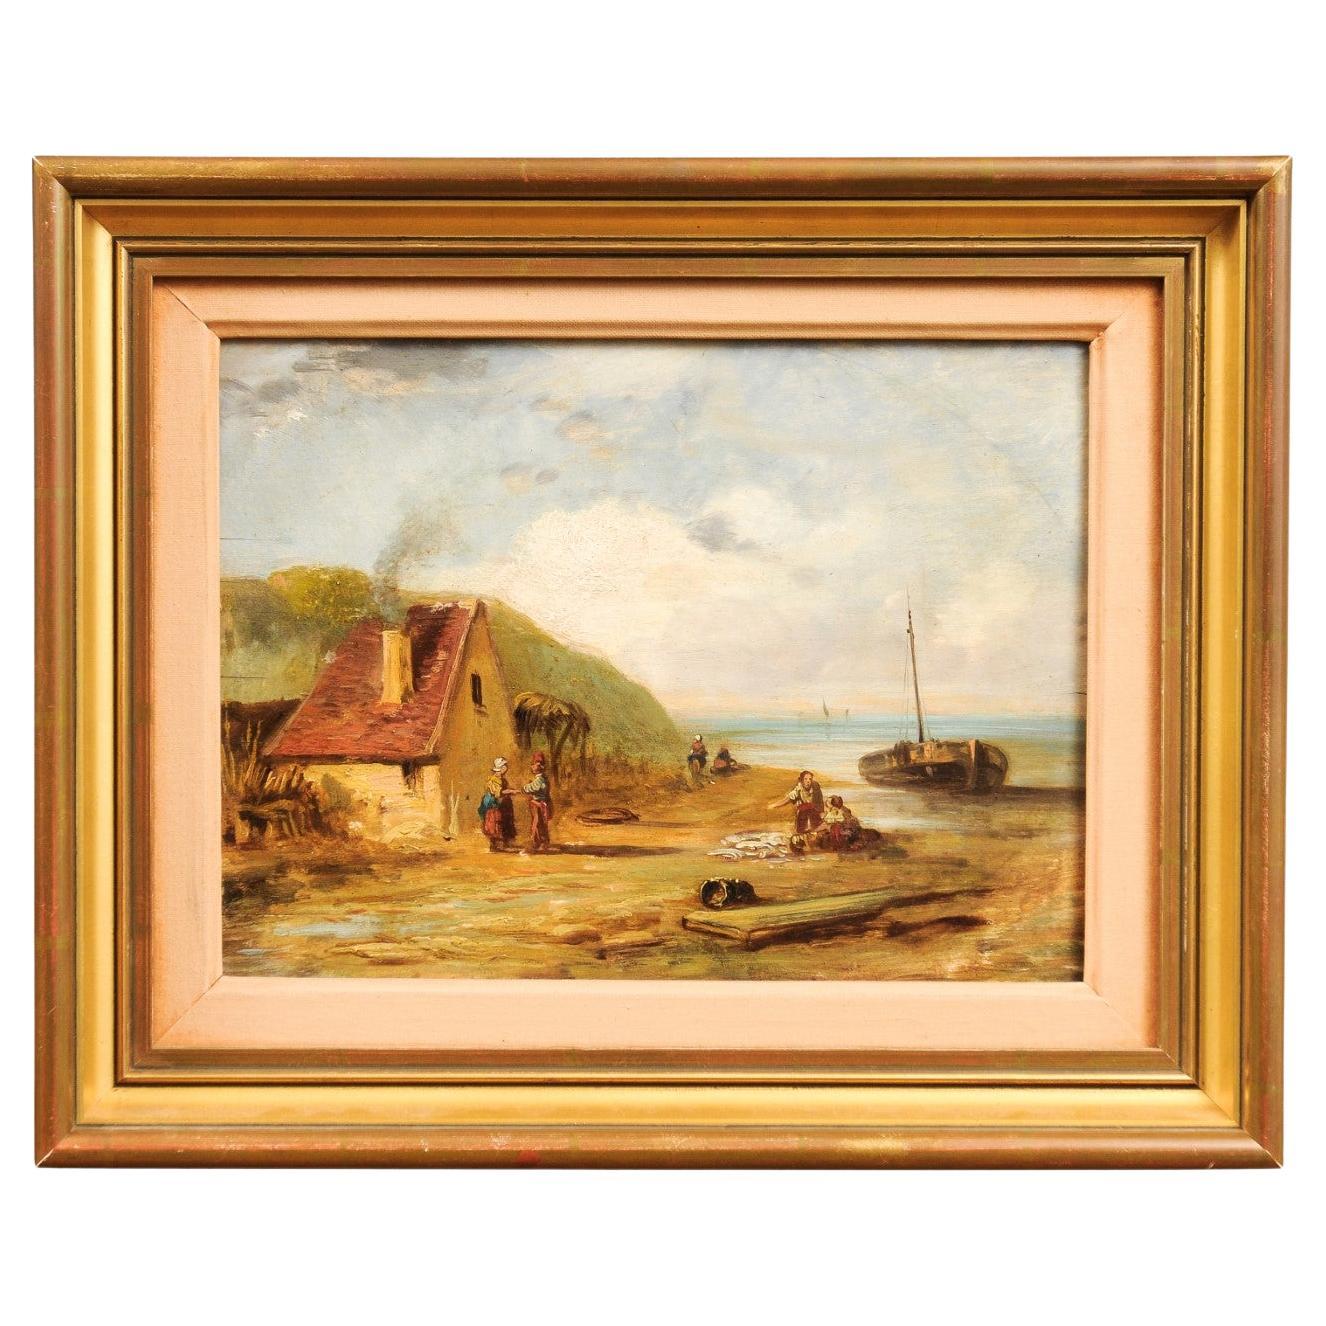 Peinture à l'huile sur panneau encadrée du 19ème siècle représentant un village en bord de mer